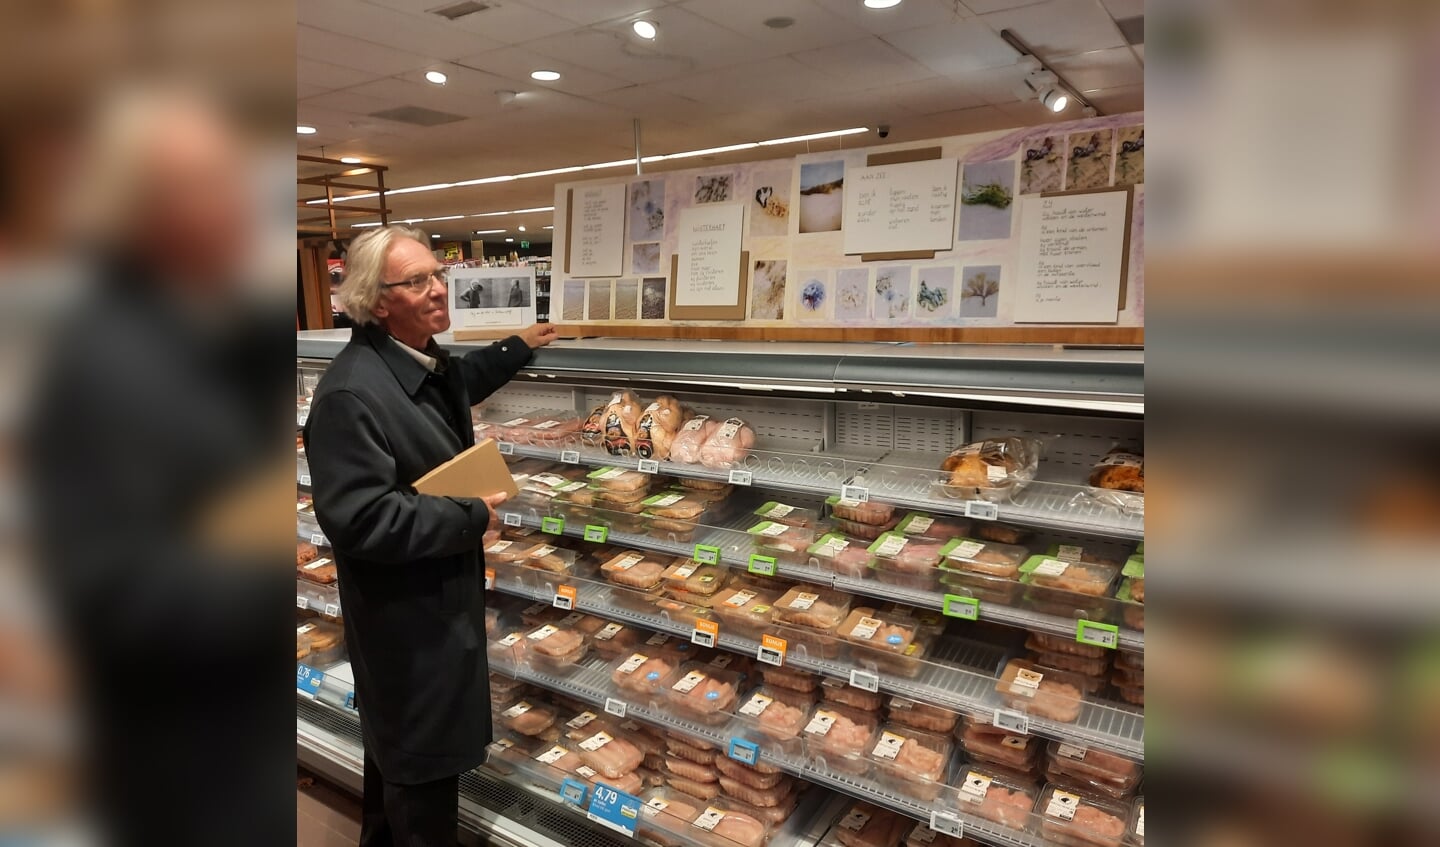 “Je moet er als de kippen bij zijn!” Dorpsdichter Arij van der Vliet bij zijn gedichten boven het kippenvak in de supermarkt.